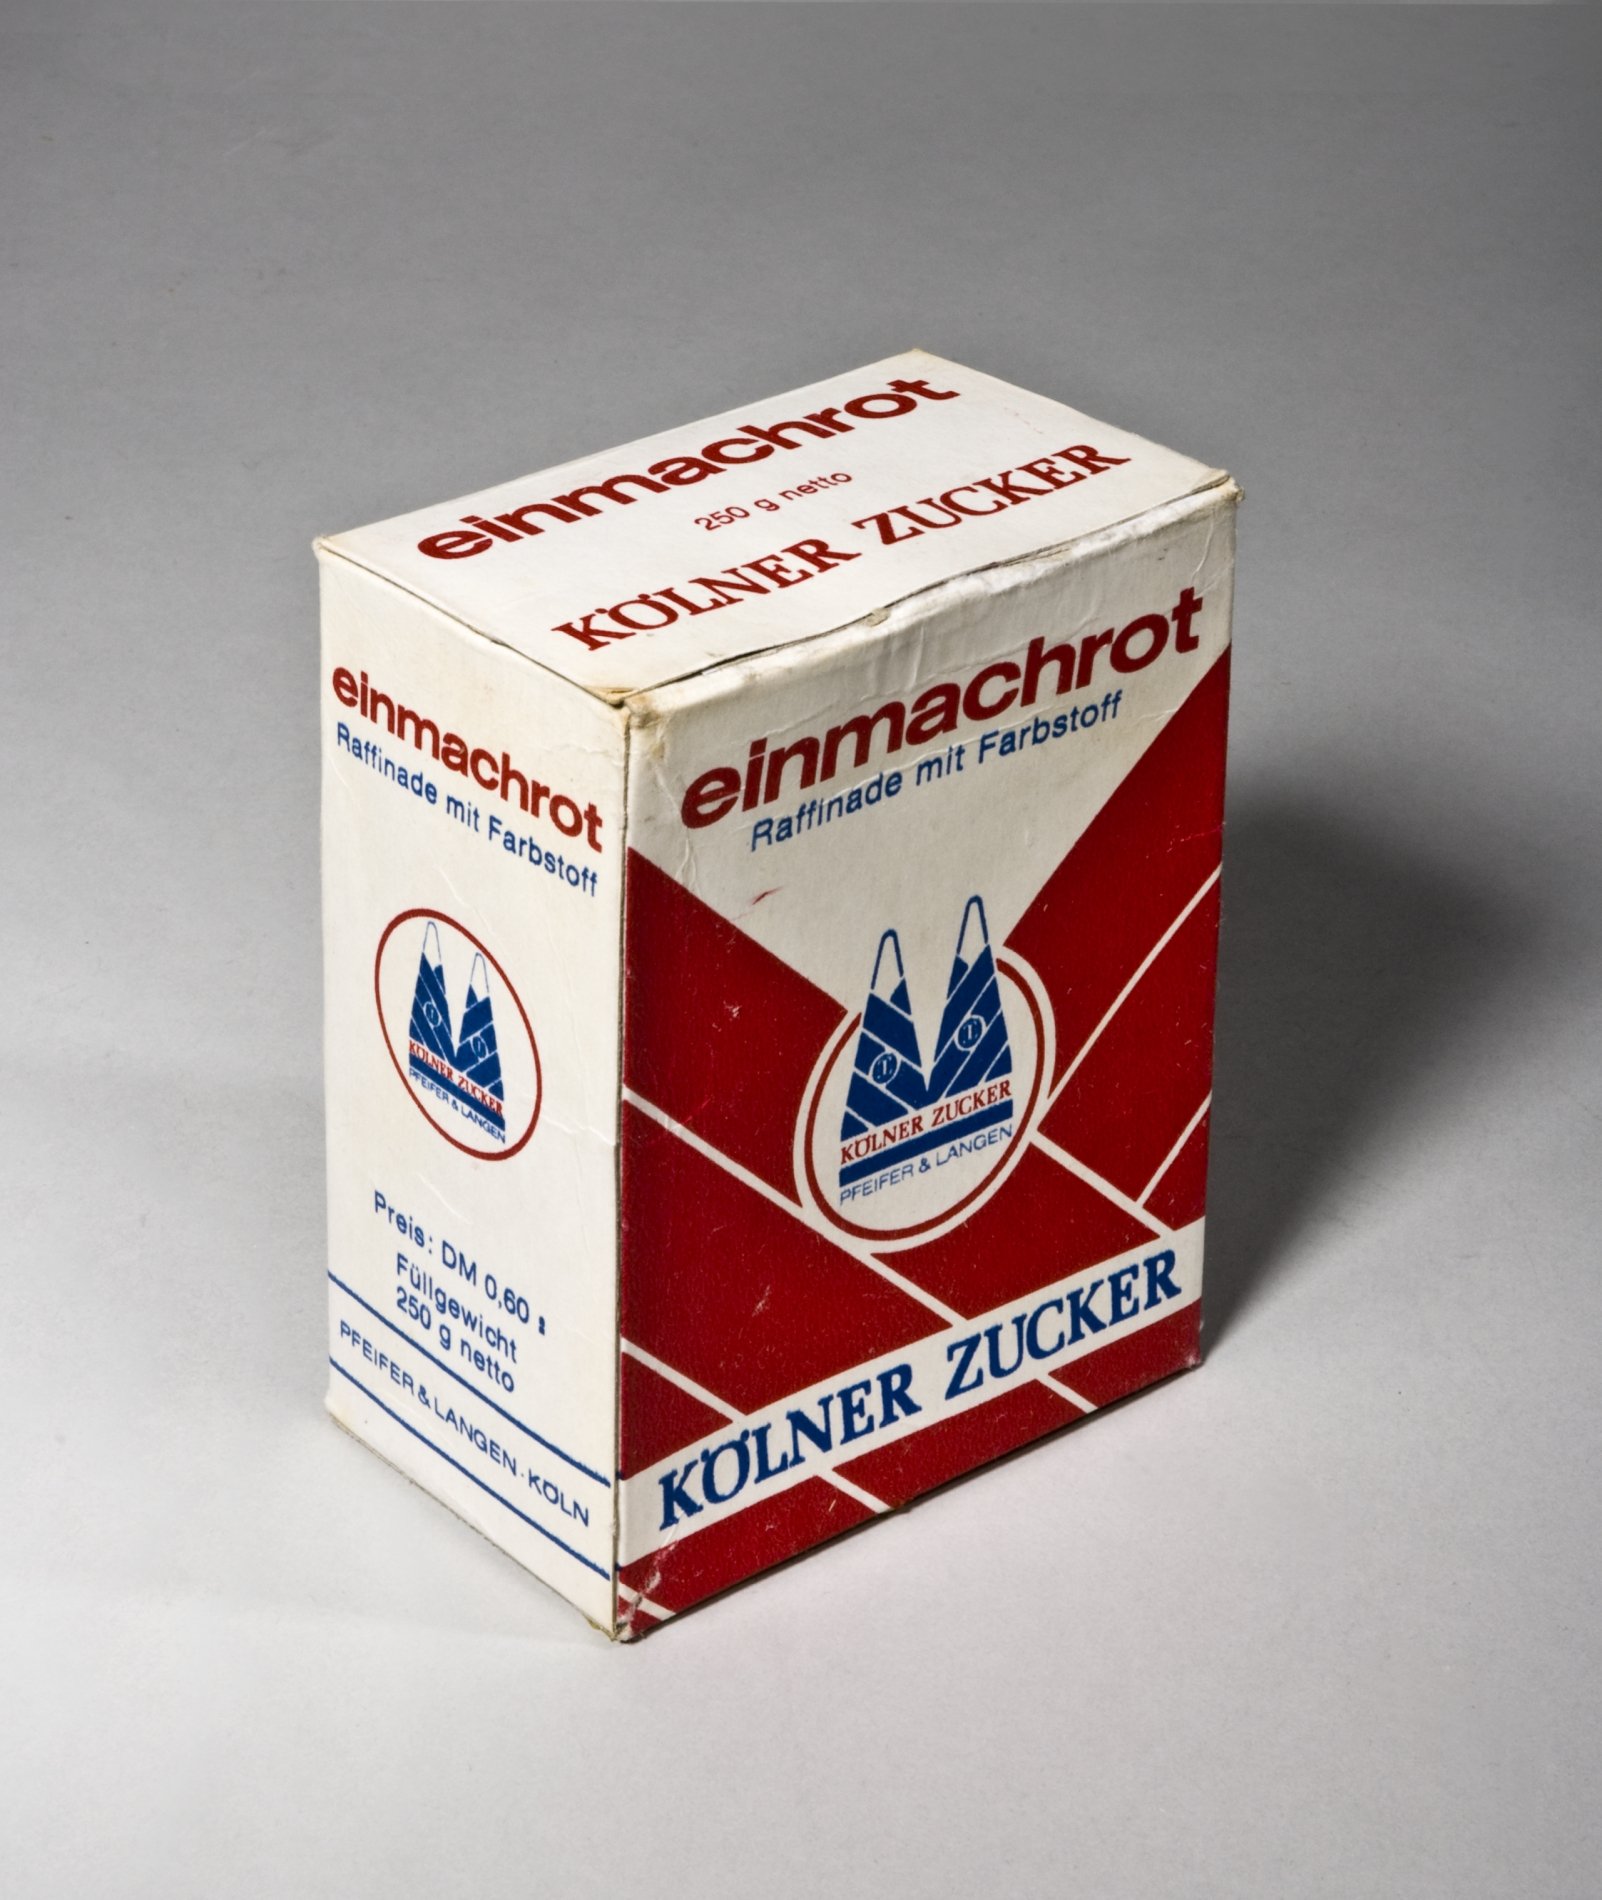 Verpackungskarton "einmachrot - Raffinade mit Farbstoff" von "Kölner Zucker" (Stiftung Domäne Dahlem - Landgut und Museum, Weiternutzung nur mit Genehmigung des Museums CC BY-NC-SA)